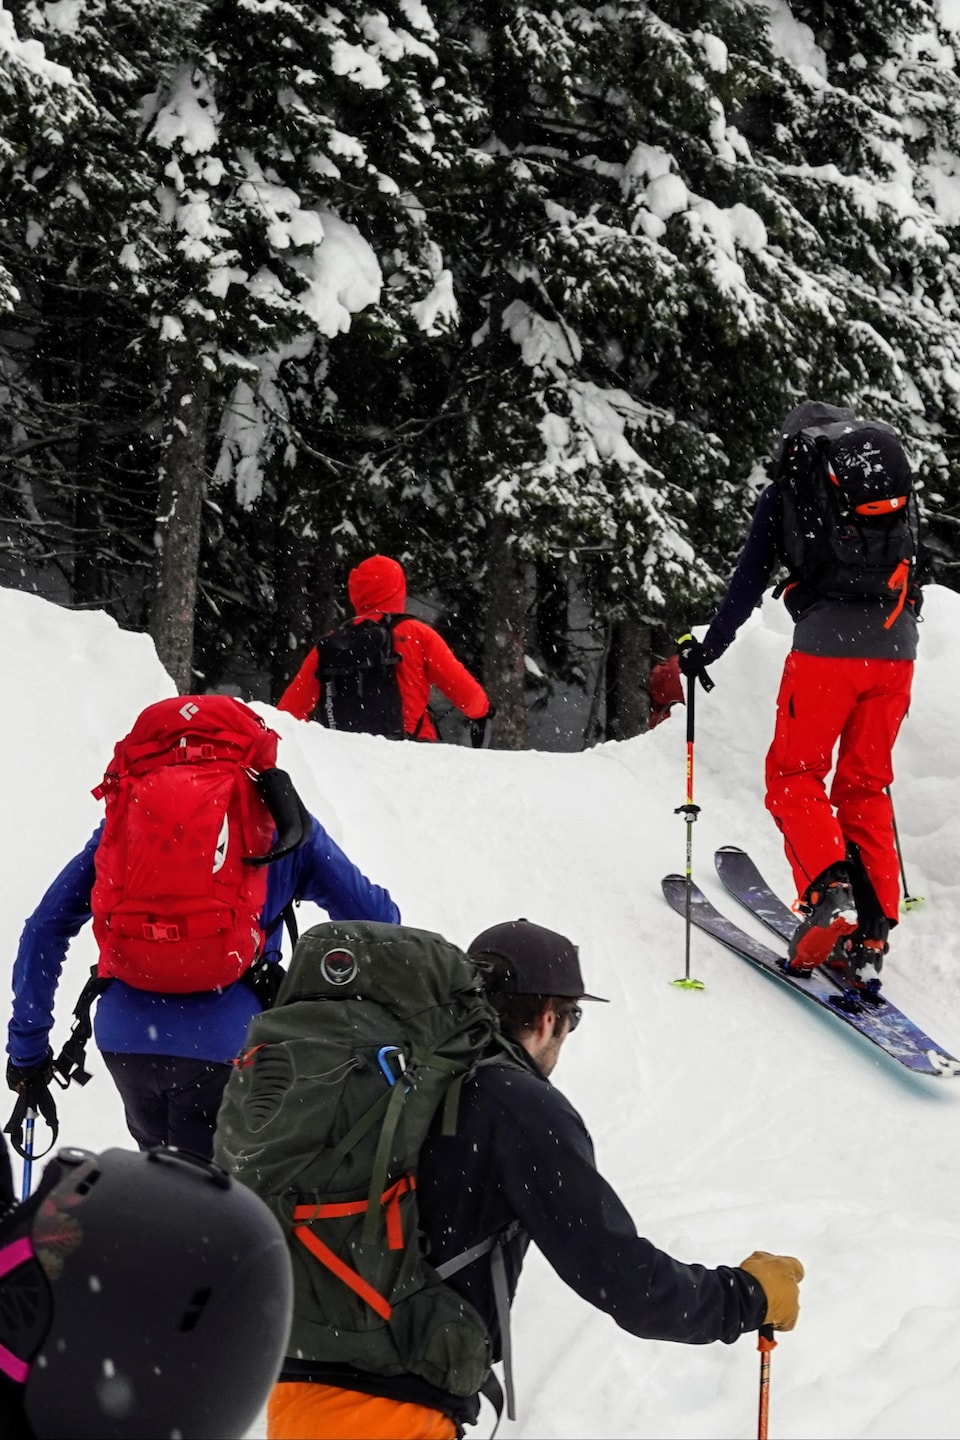 Près d'une dizaine de skieurs en habits colorés avec des sacs à dos se dirigent sur une piste enneigée. 